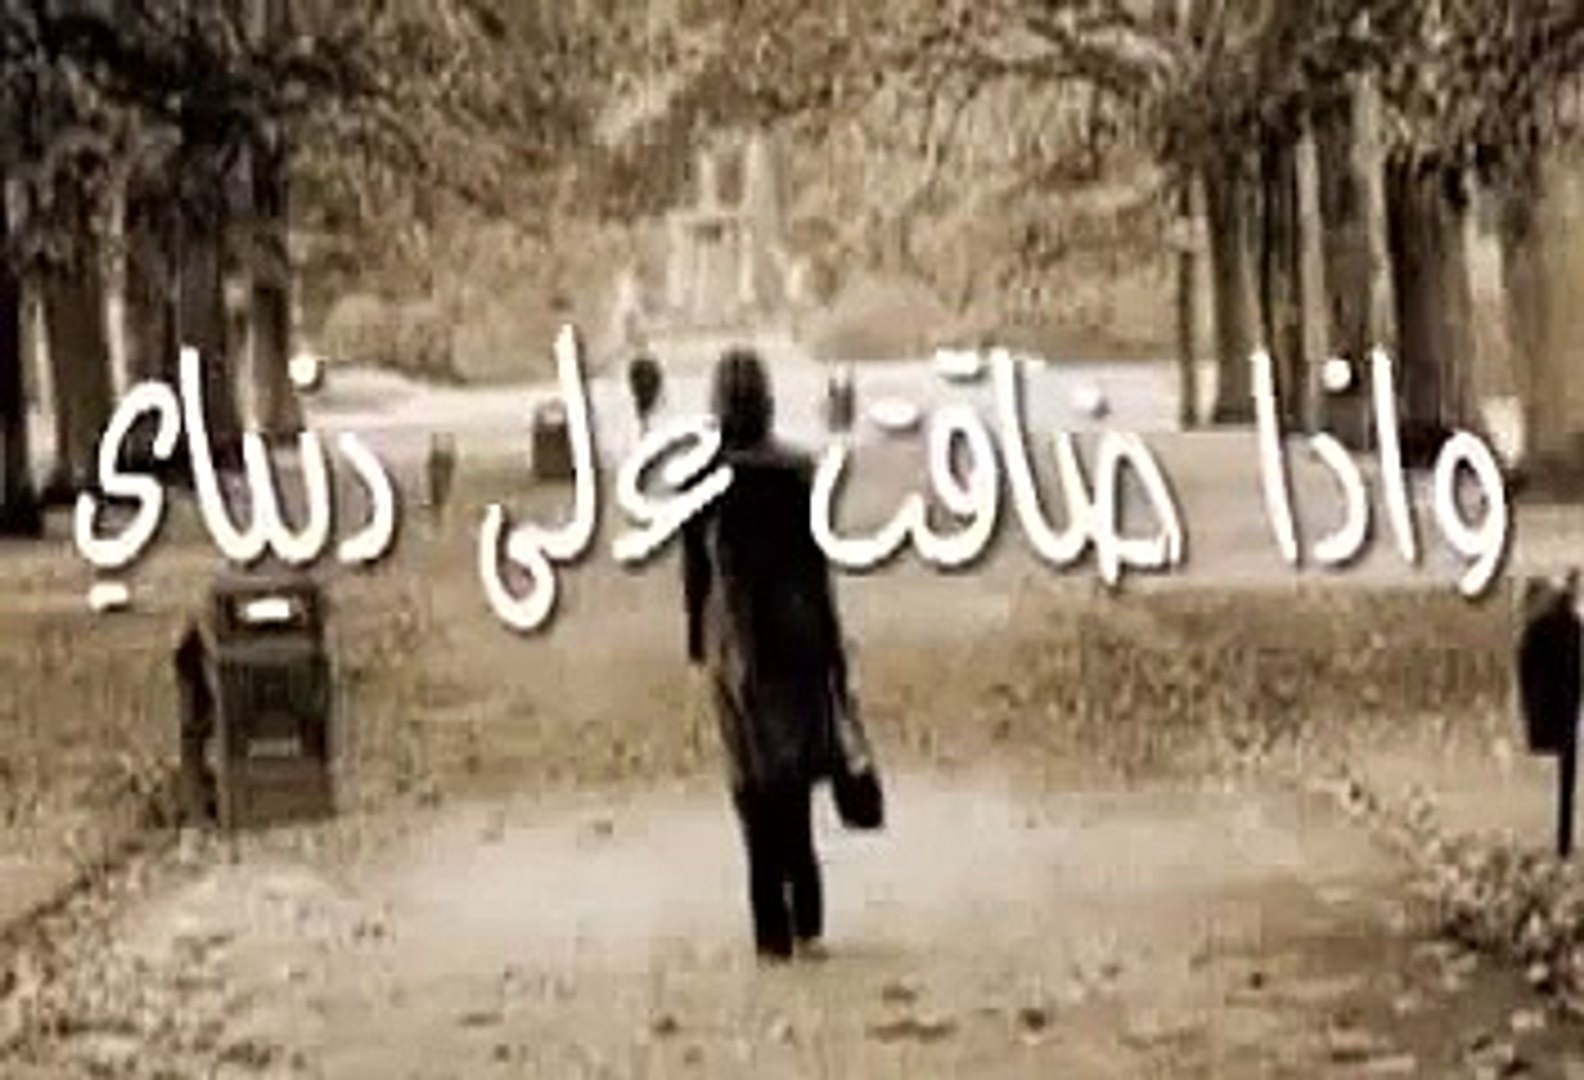 عبدالله سالم اذا ناوي تروح اغنية حزينة - Dailymotion Video